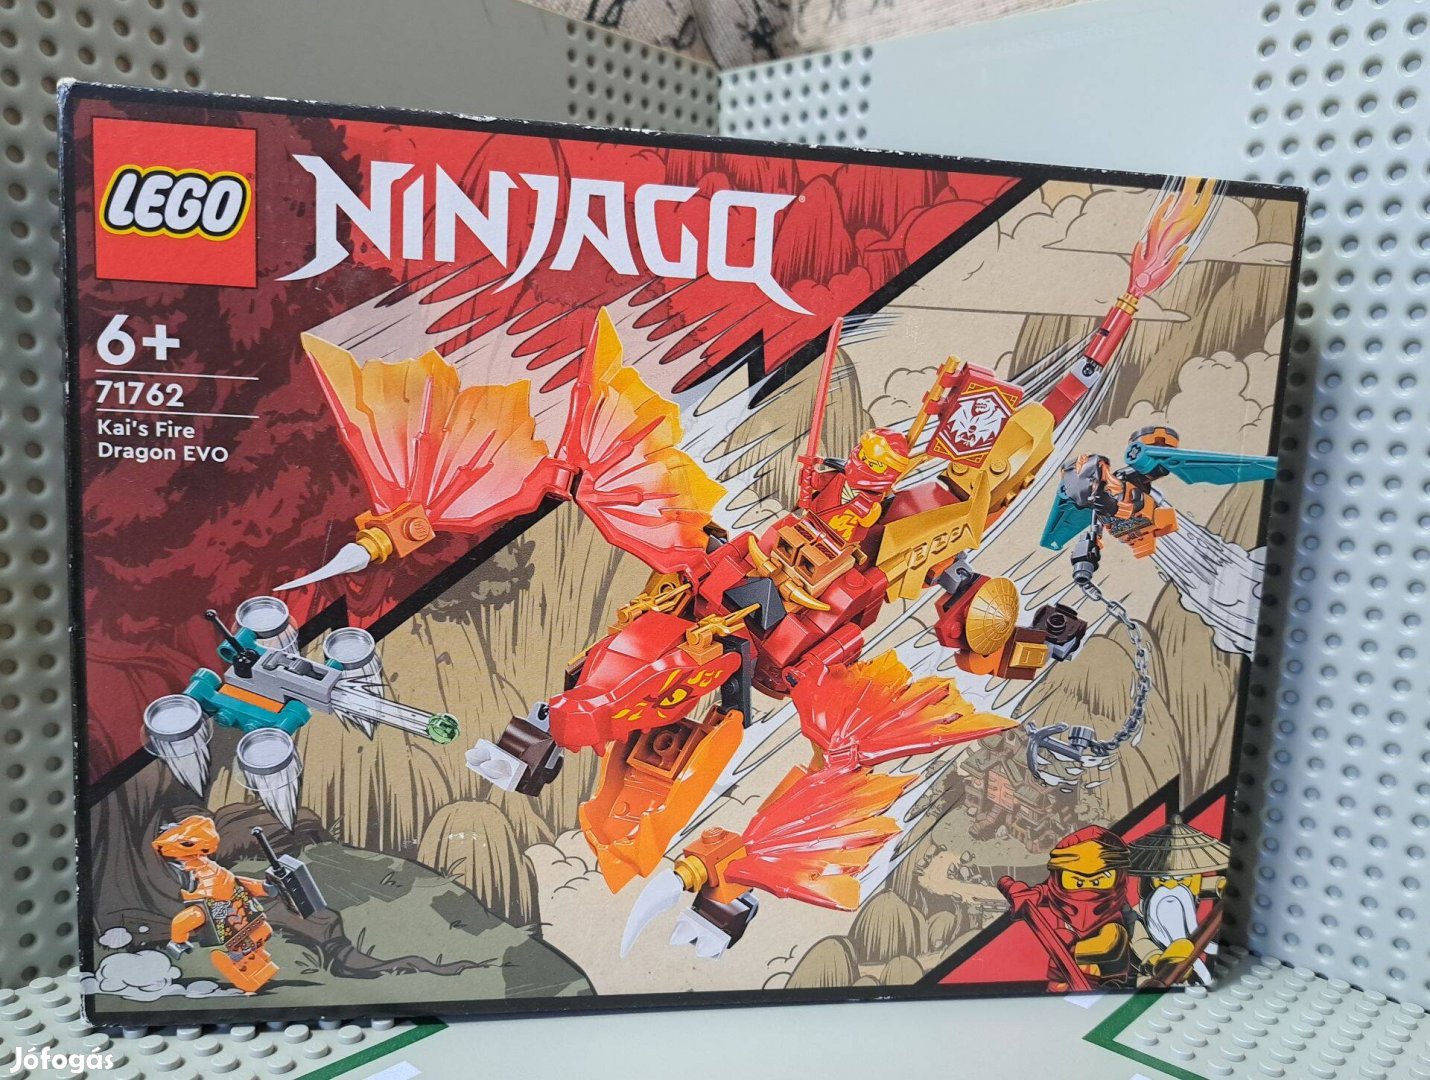 LEGO Ninjago 71762, Kai"s Fire Dragon evo